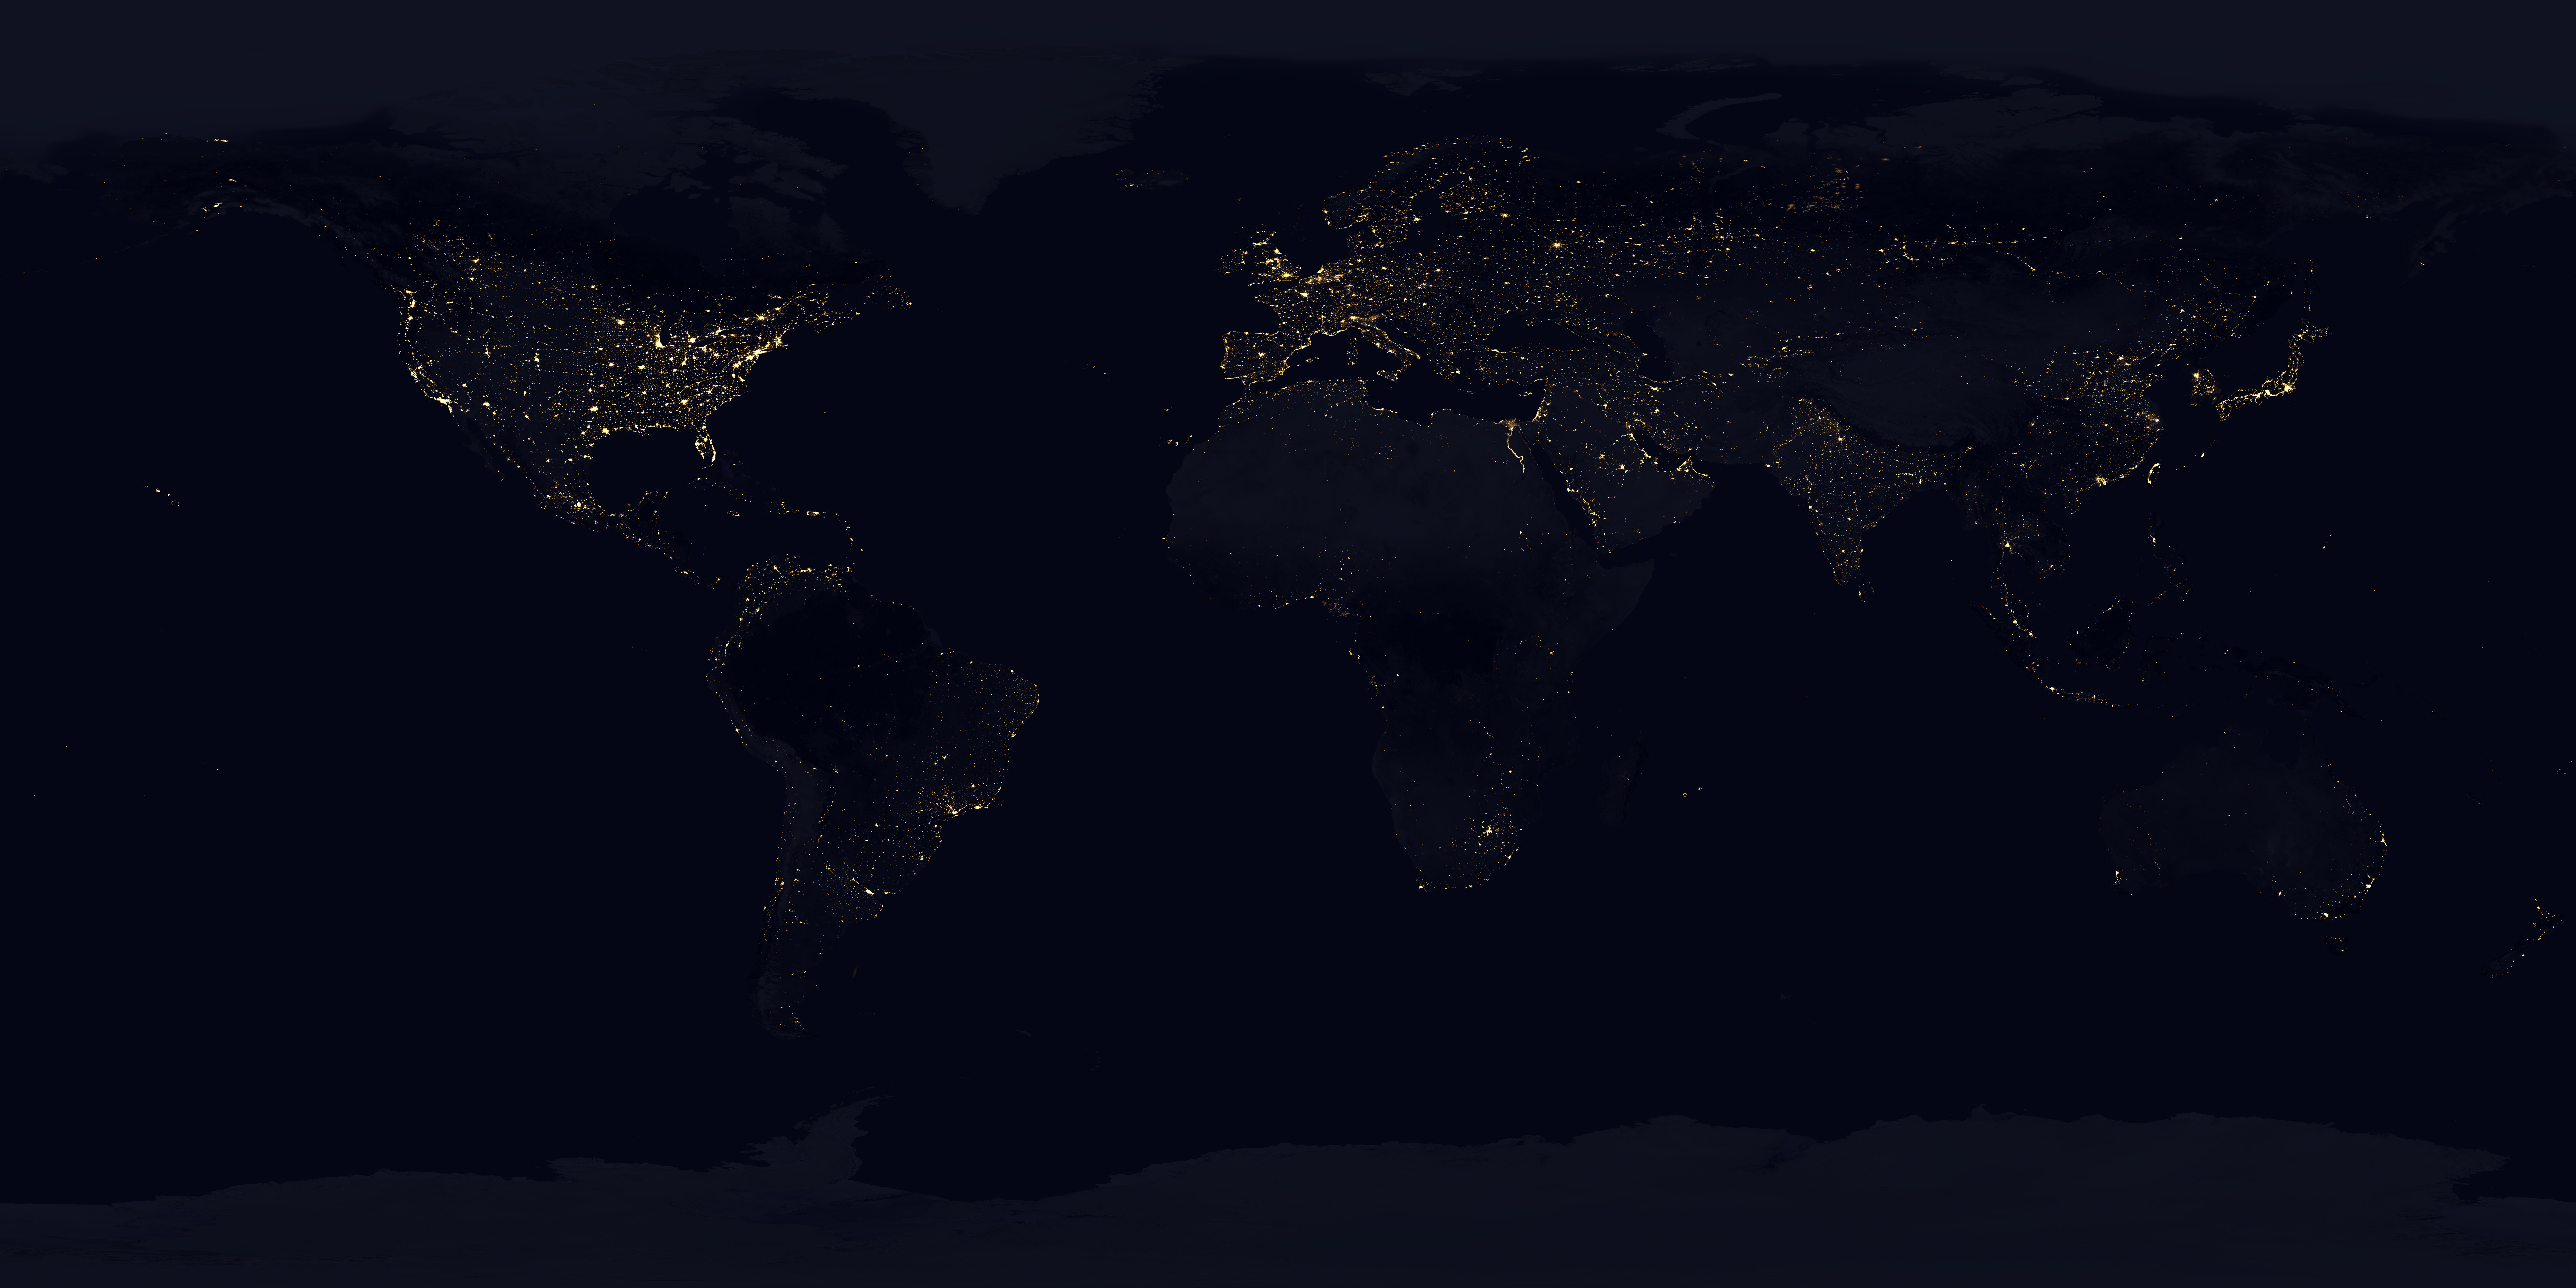 Solarsystemscope_texture_8k_earth_nightmap.jpg